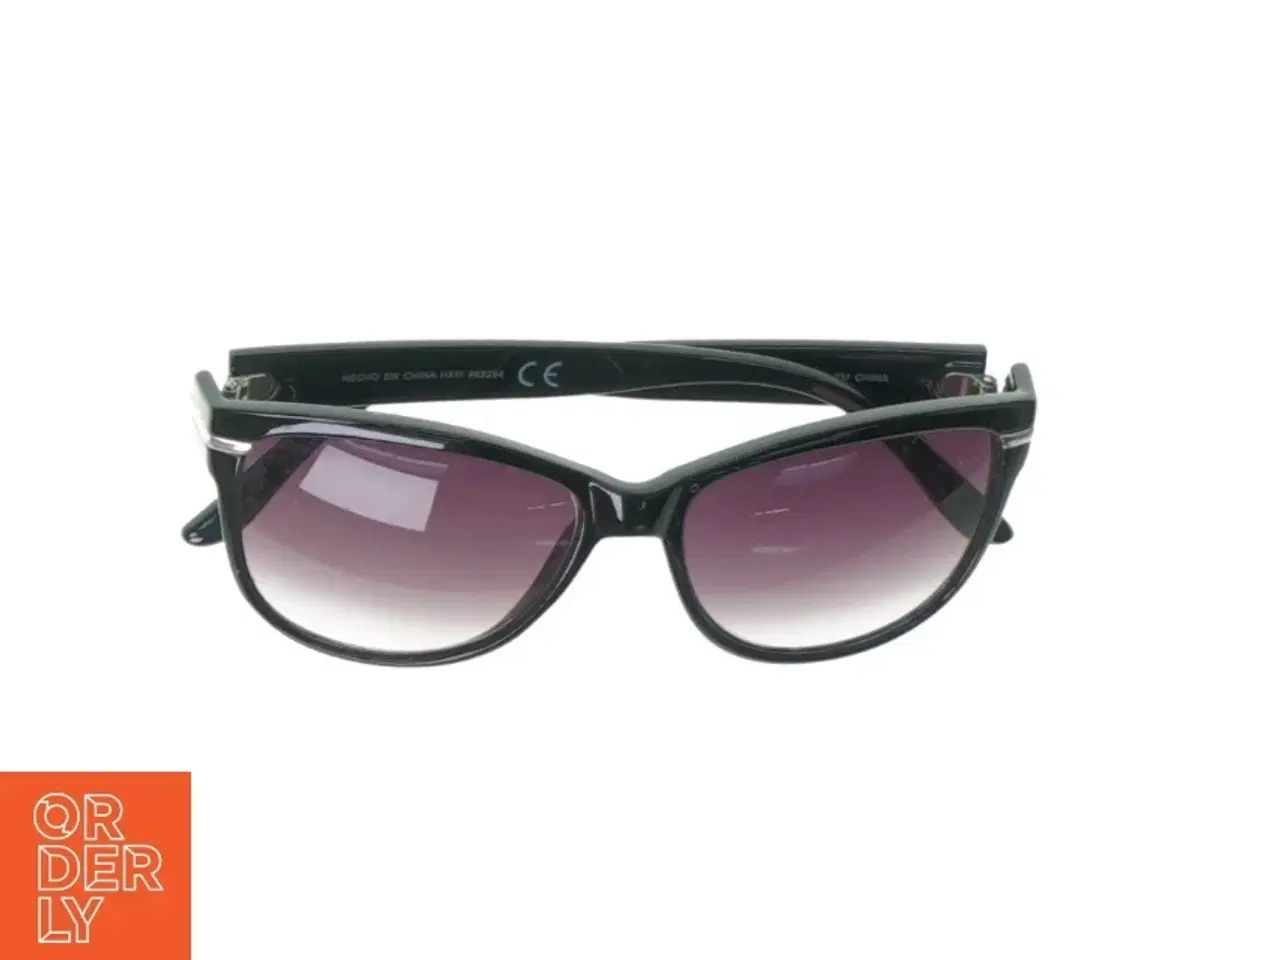 Billede 1 - Solbriller fra H&M (str. 13 x 5 cm)